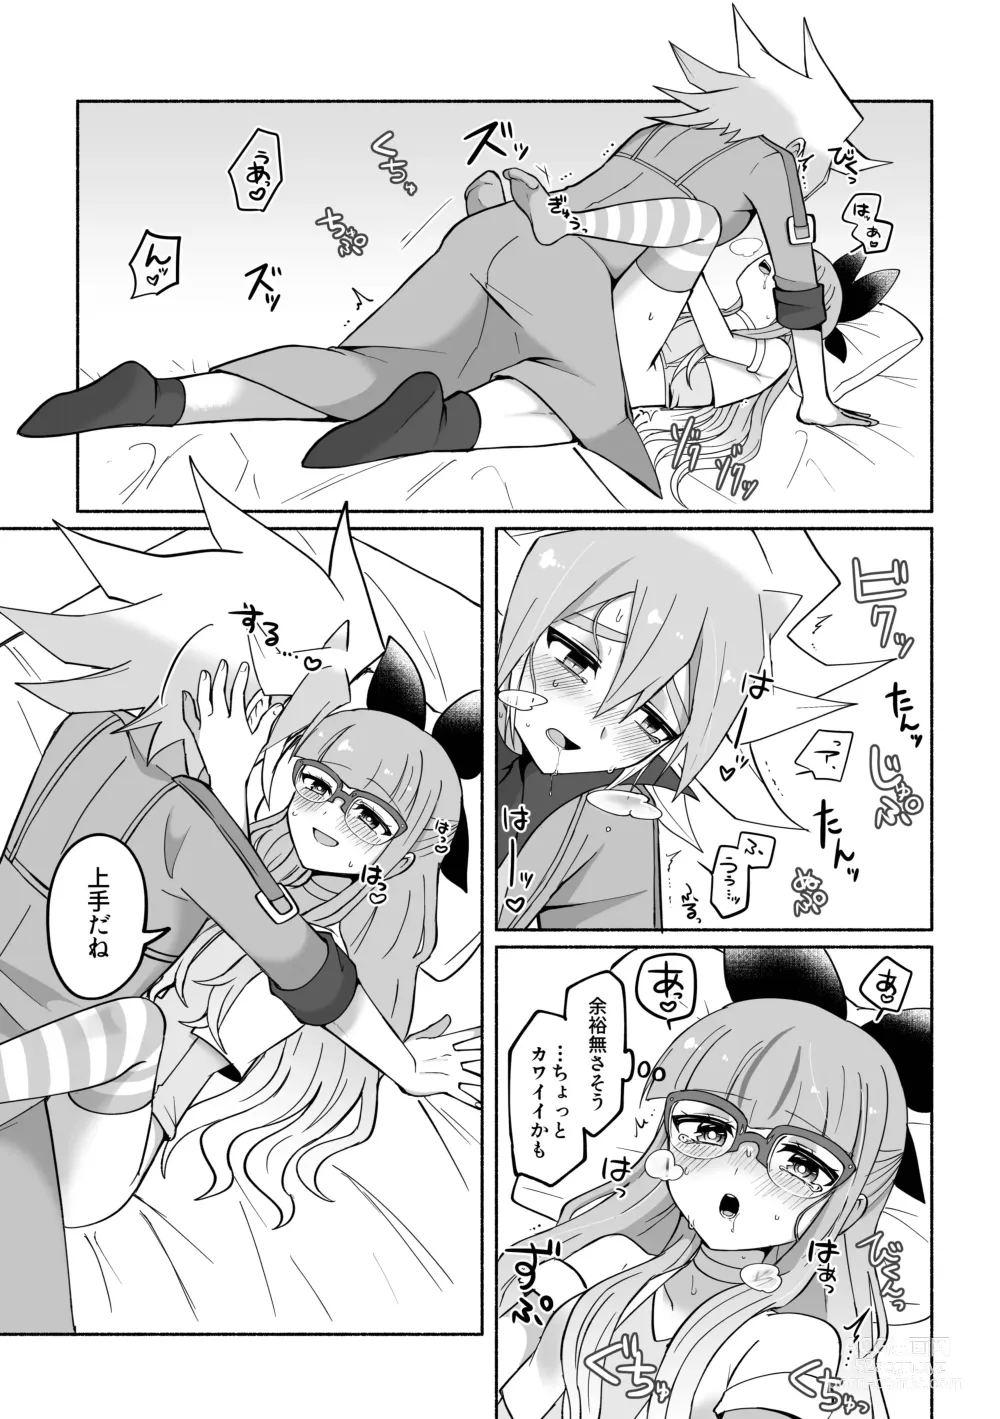 Page 9 of doujinshi Yudi yu a manga